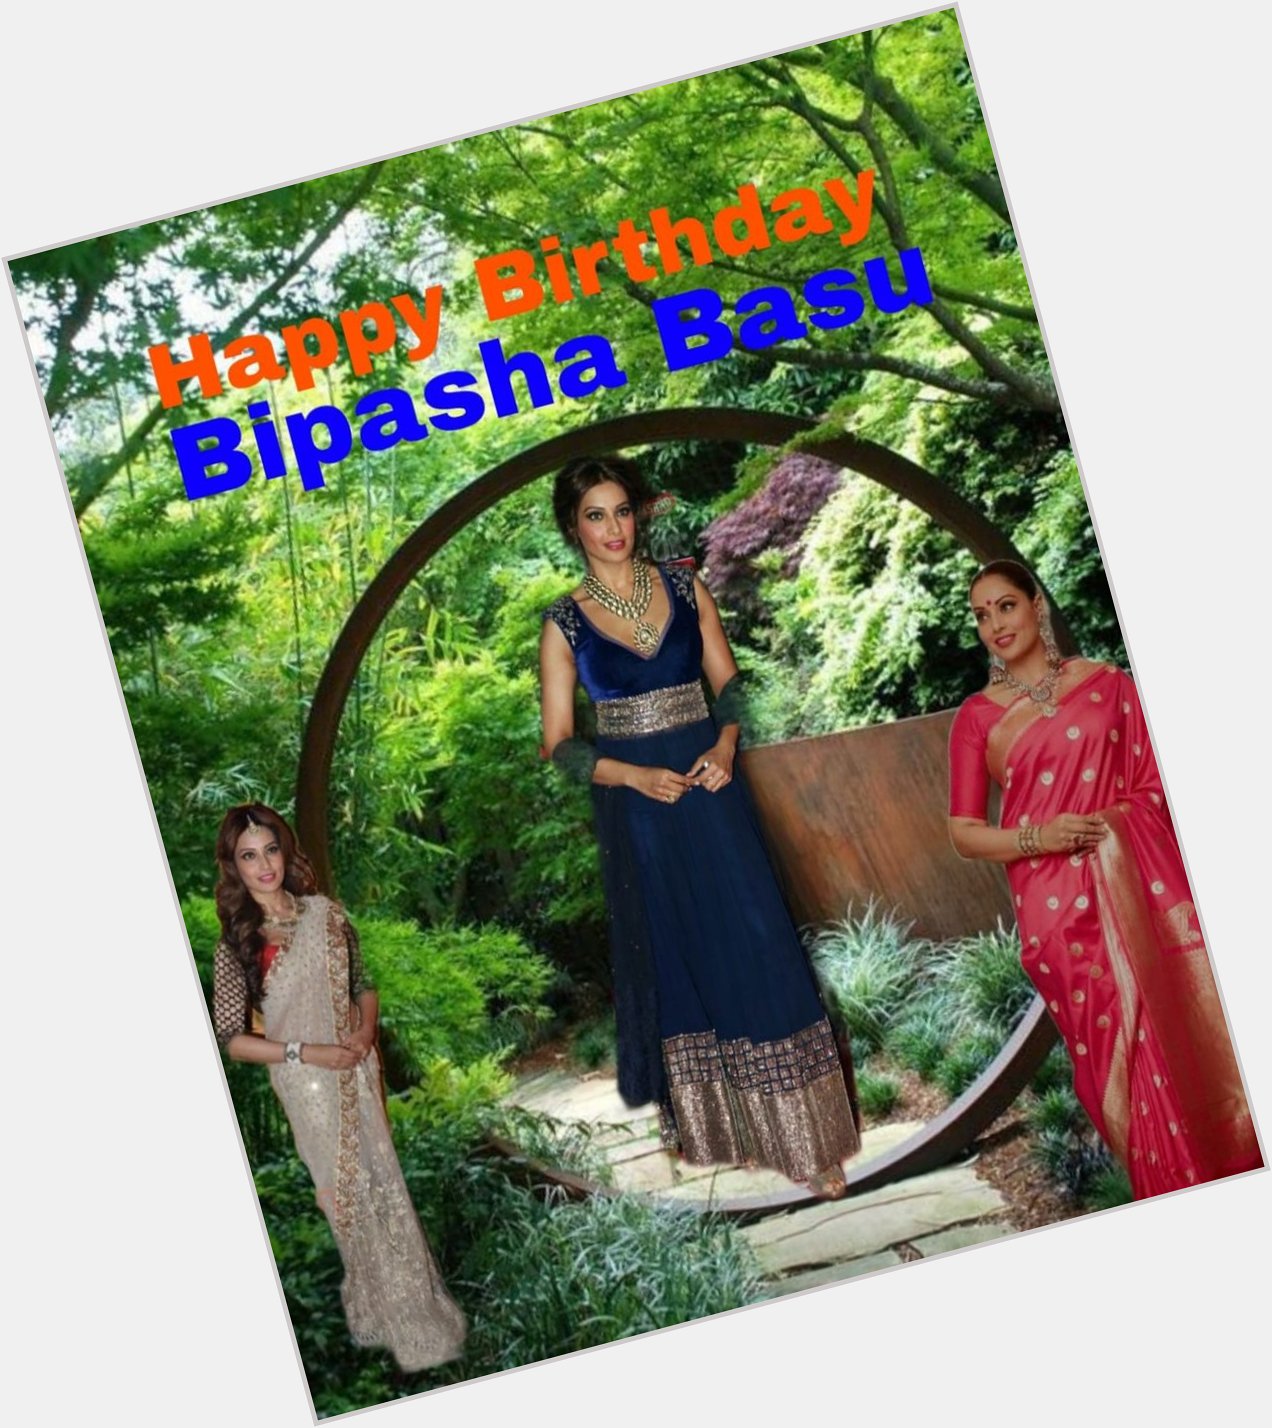 Happy Birthday 
Bipasha Basu   